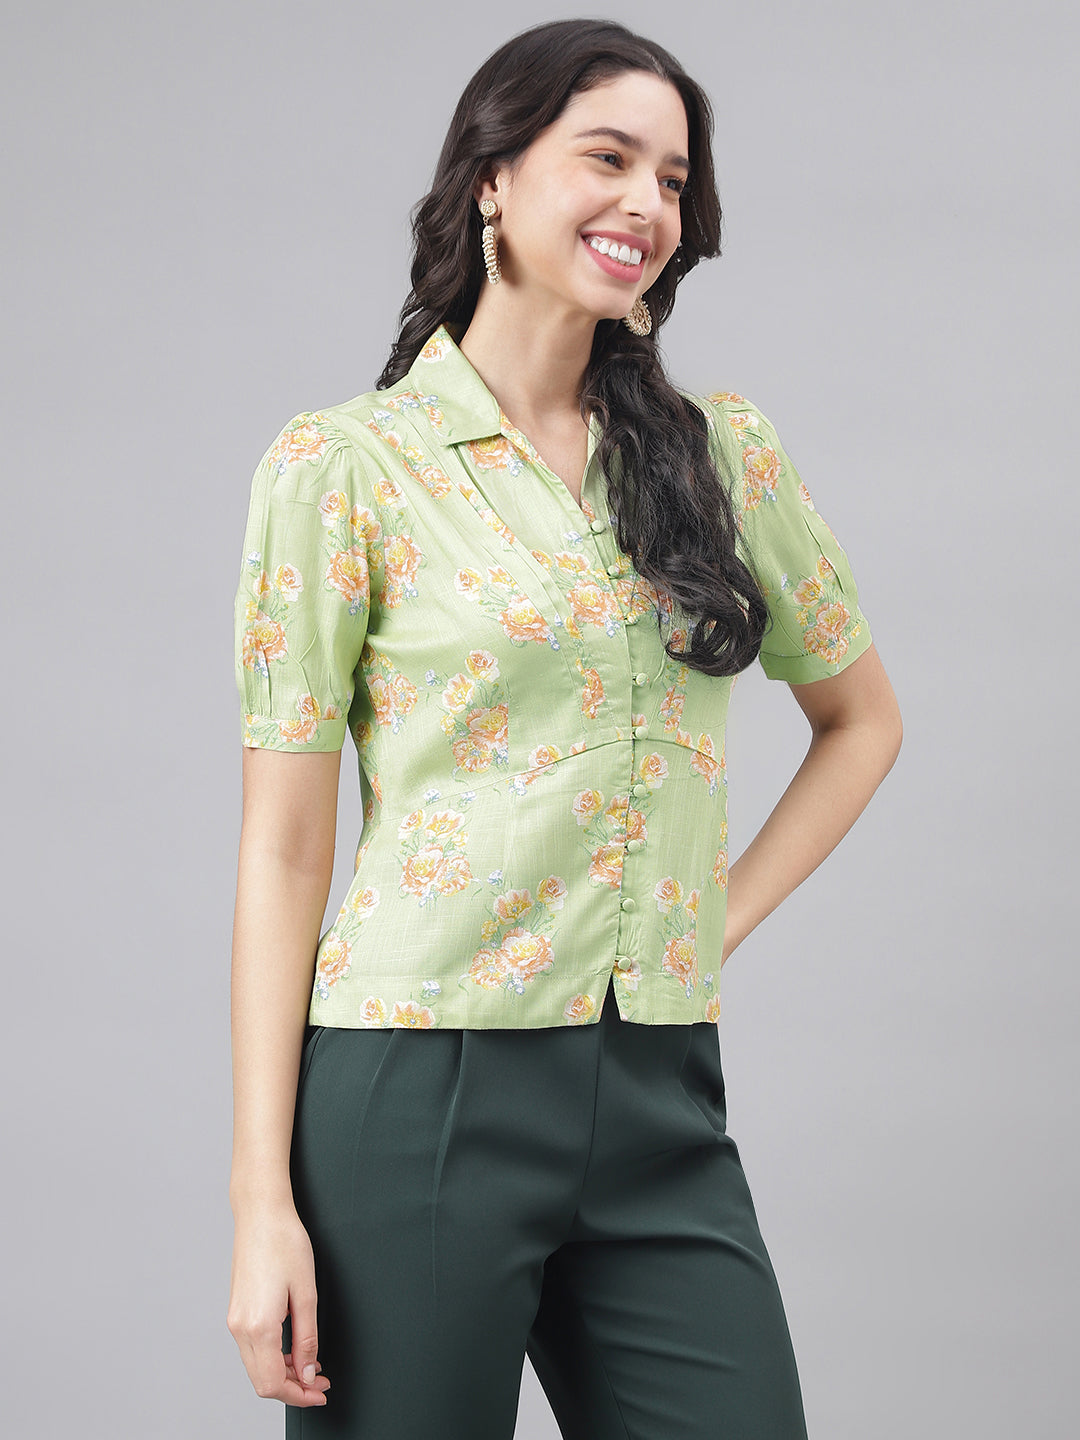 Green Half Sleeve Shirt Collar Women Floral Top